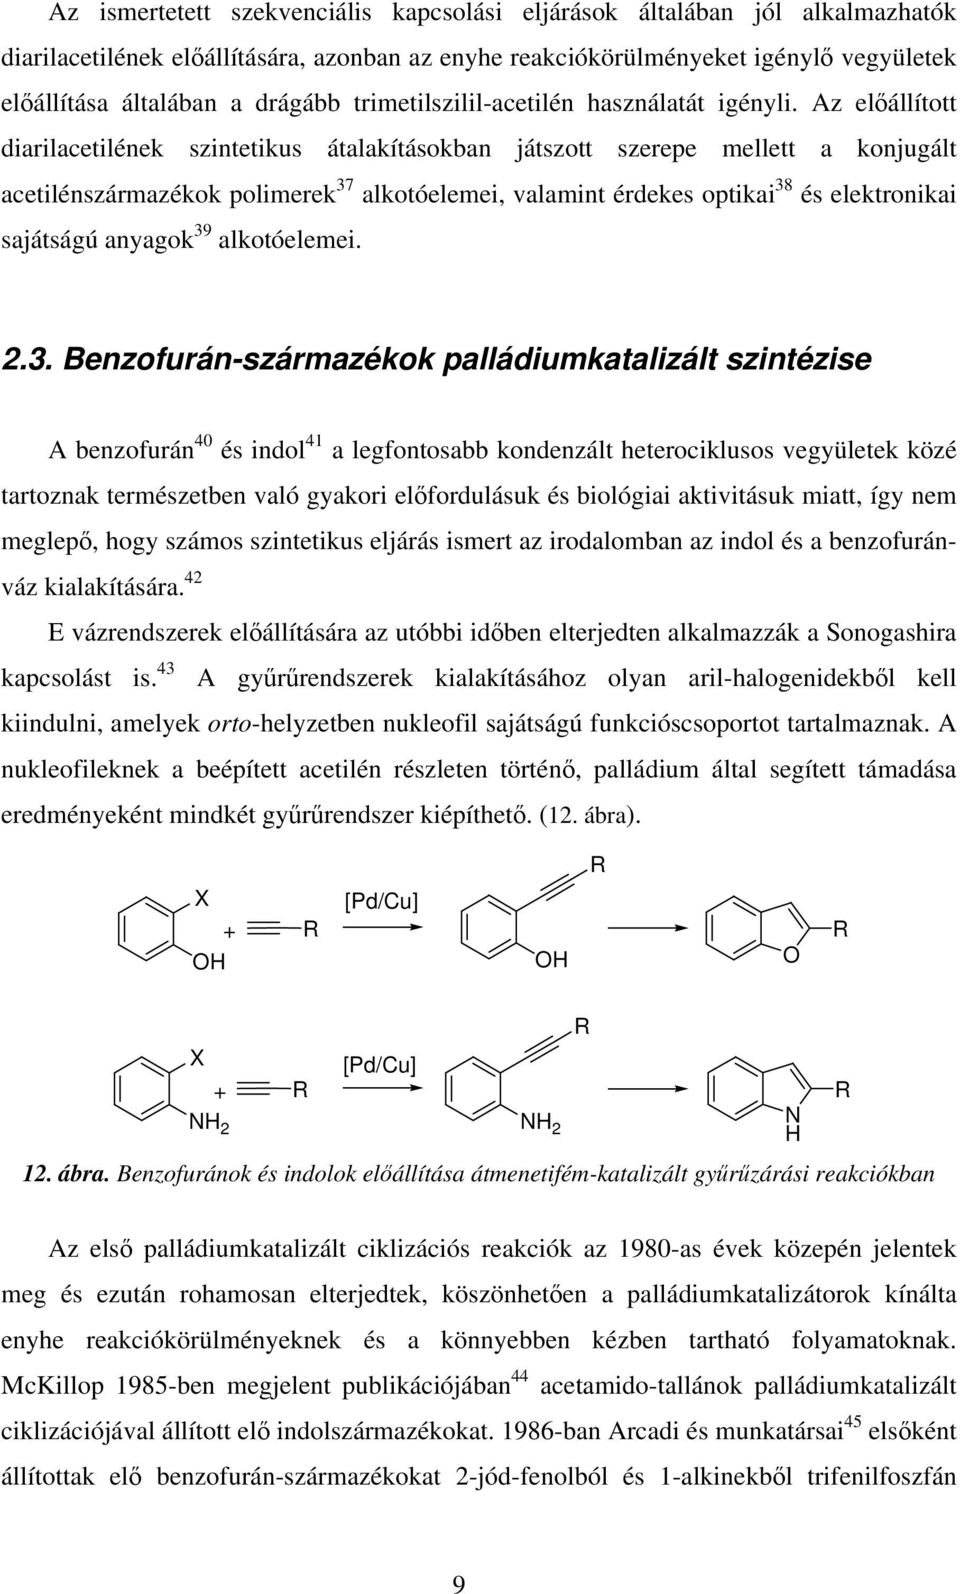 Az elállított diarilacetilének szintetikus átalakításokban játszott szerepe mellett a konjugált acetilénszármazékok polimerek 37 alkotóelemei, valamint érdekes optikai 38 és elektronikai sajátságú